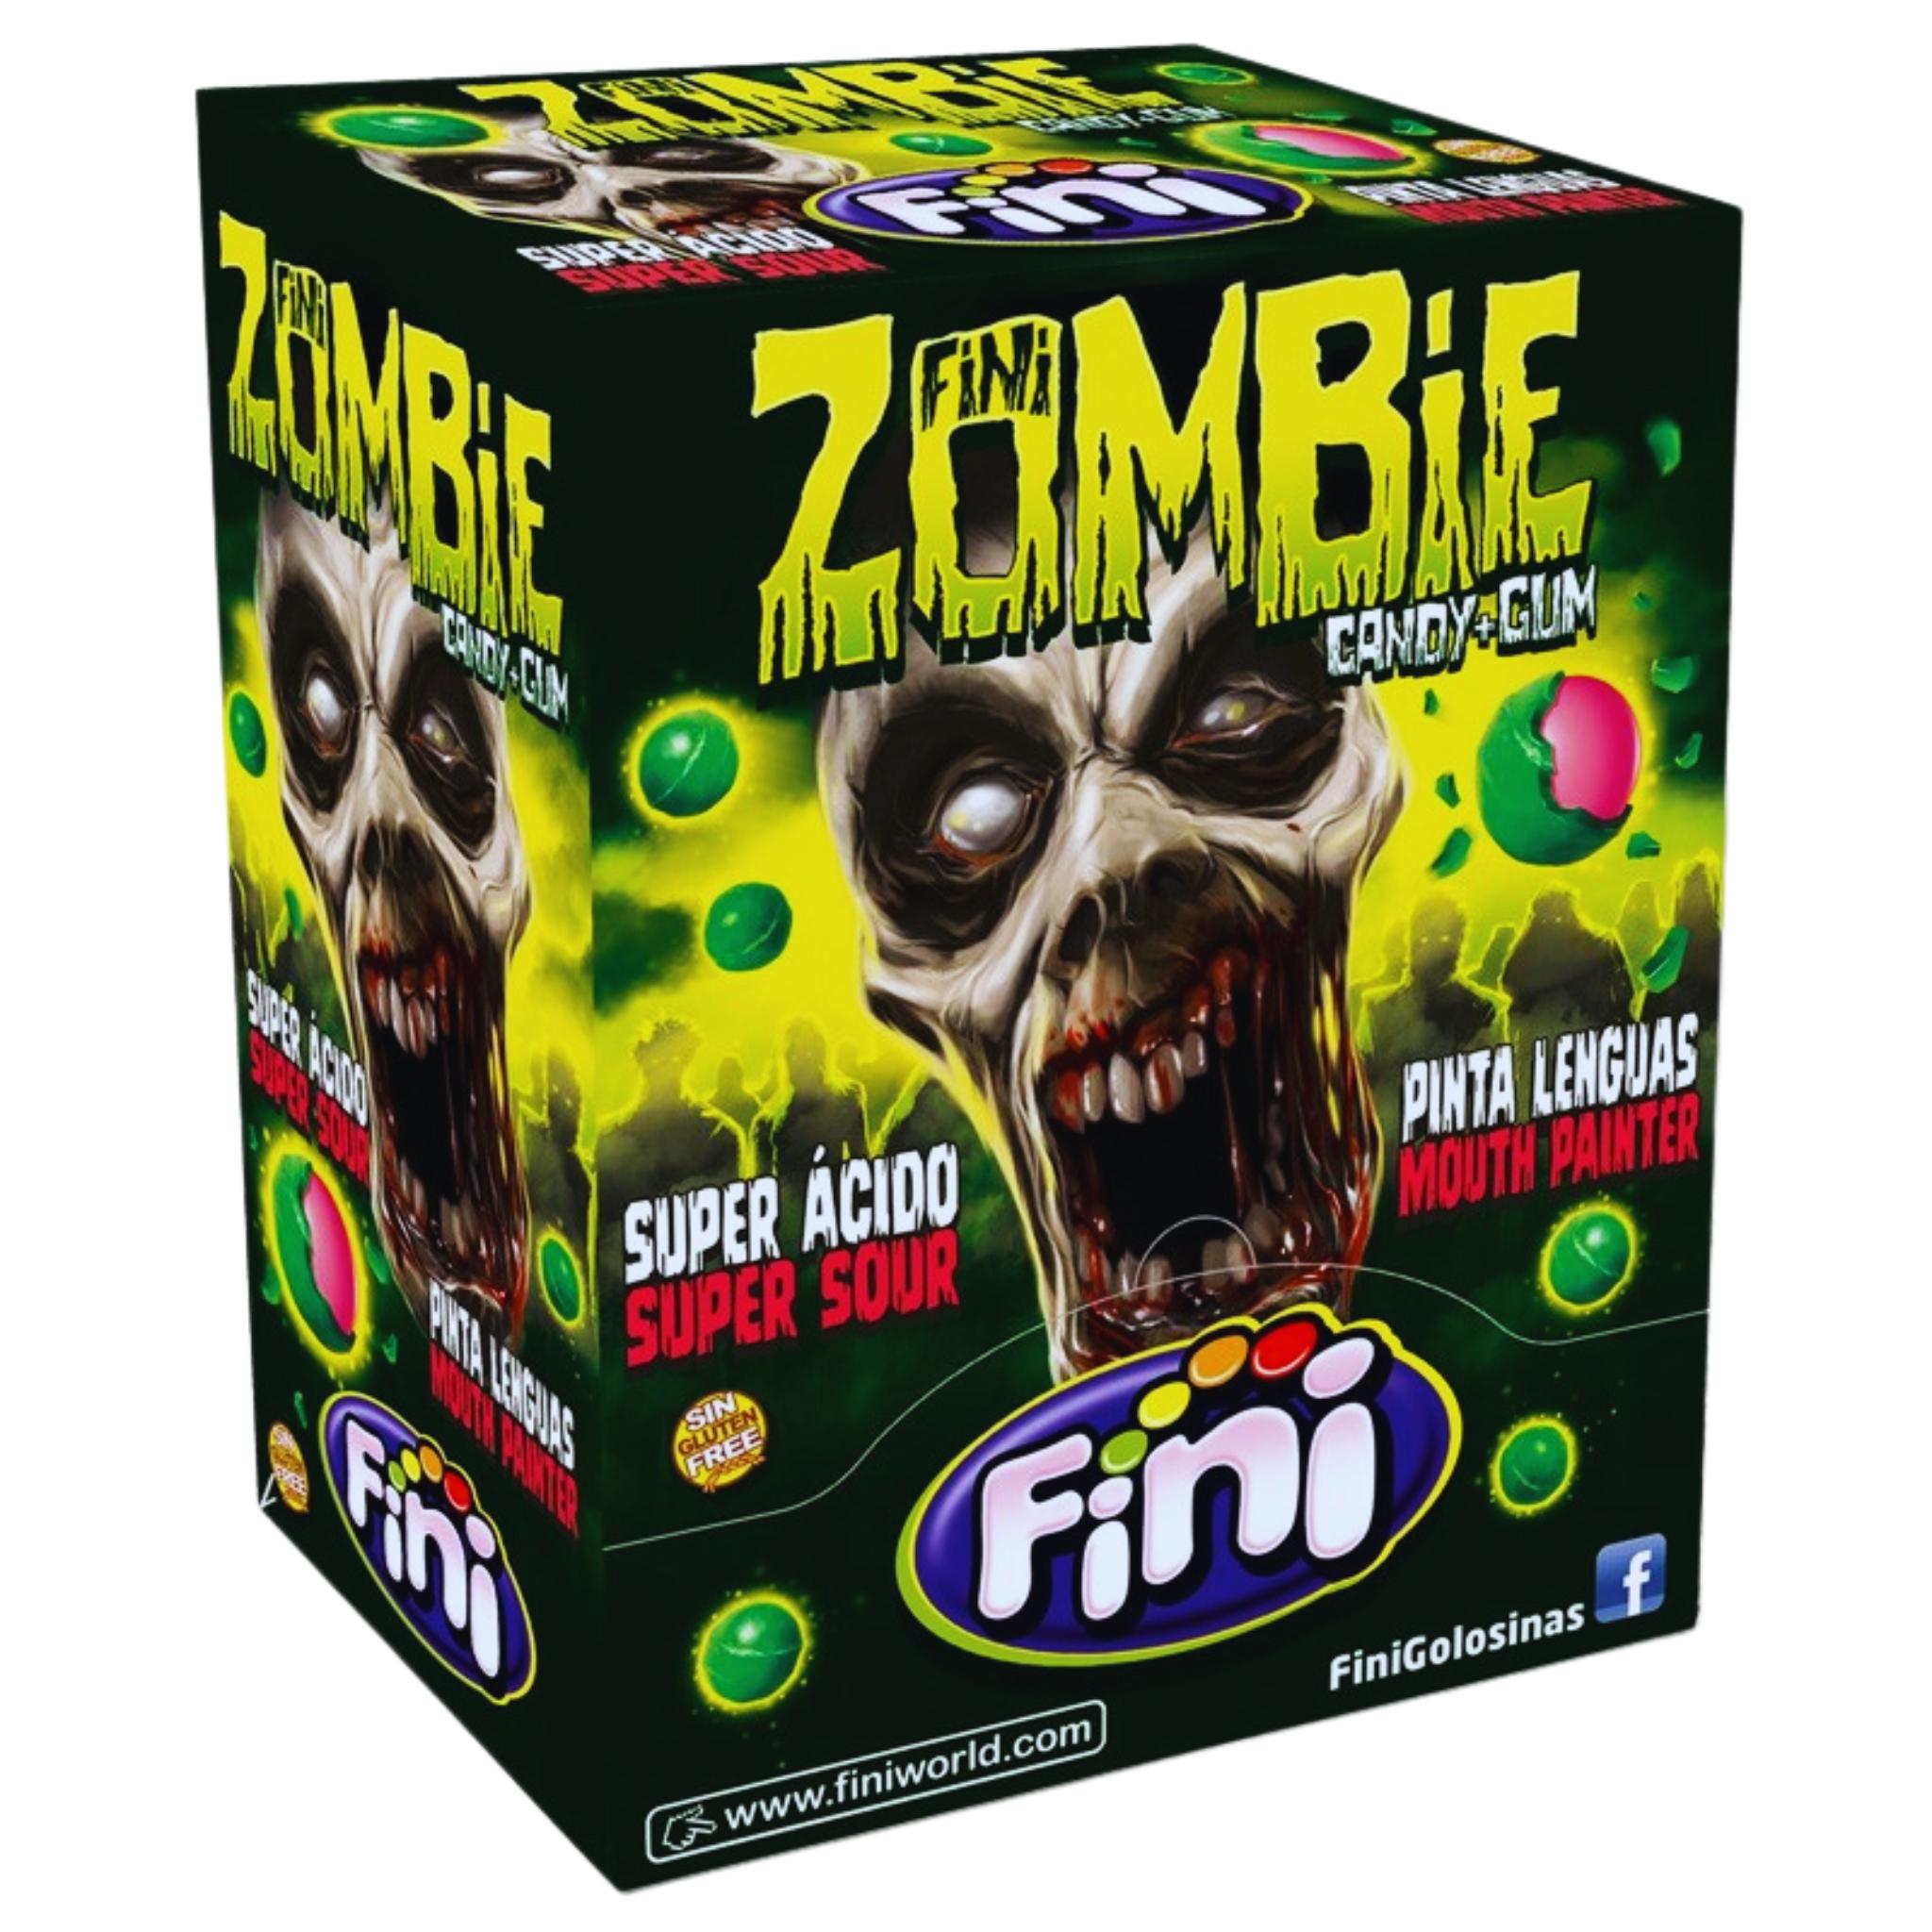 Fini Zombie Mouth Painter Bubble Gum - 5g